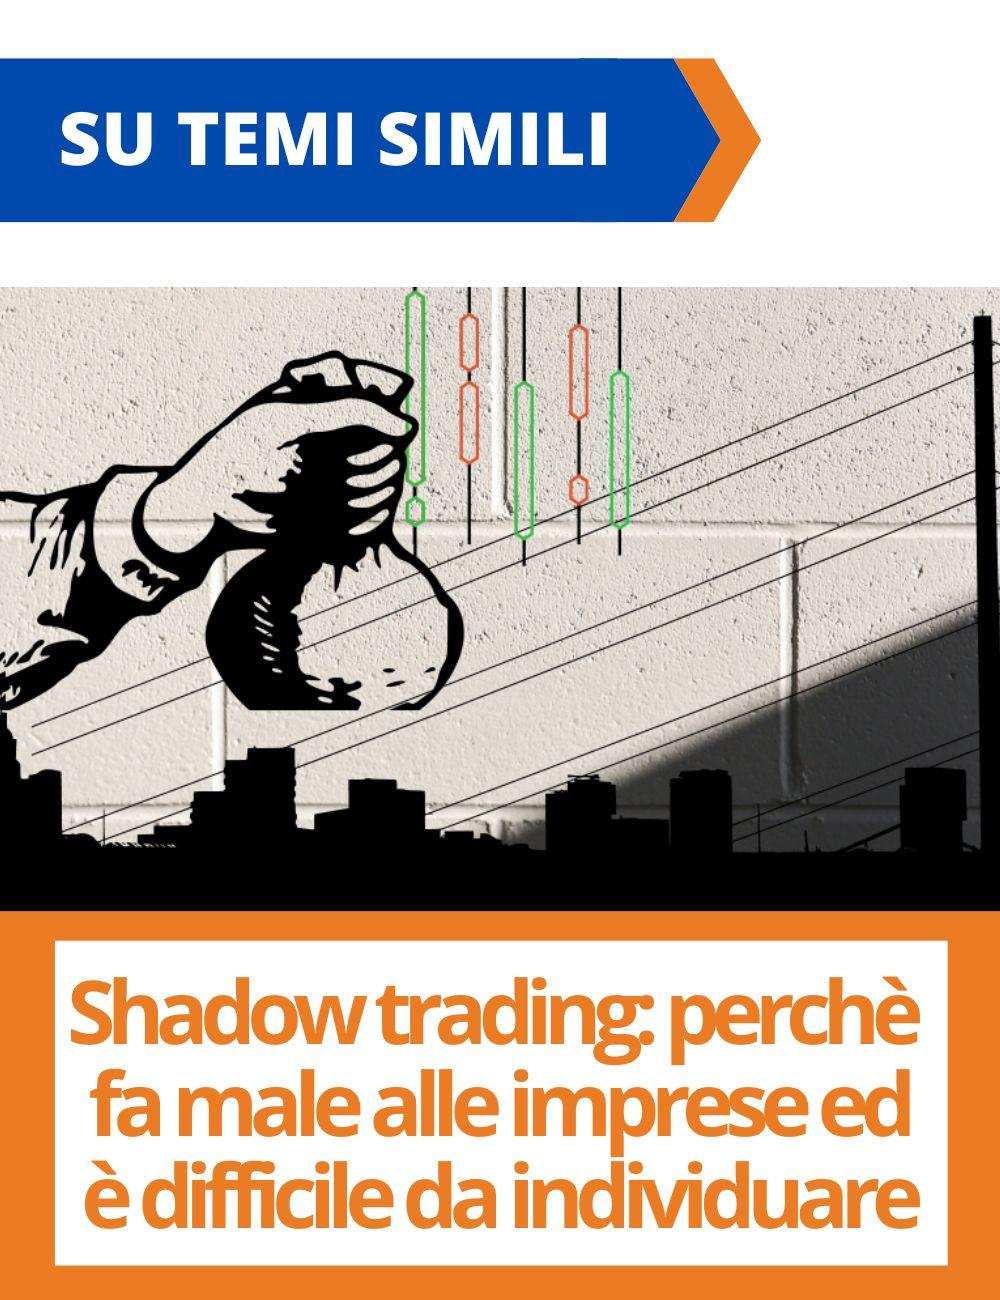 Immagine con link ad articoli su temi simili. L'immagine di icone che rappresentano il shadow trading rimanda all'articolo intitolato: Shadow trading: perche' fa male alle imprese ed e' difficile da individuare